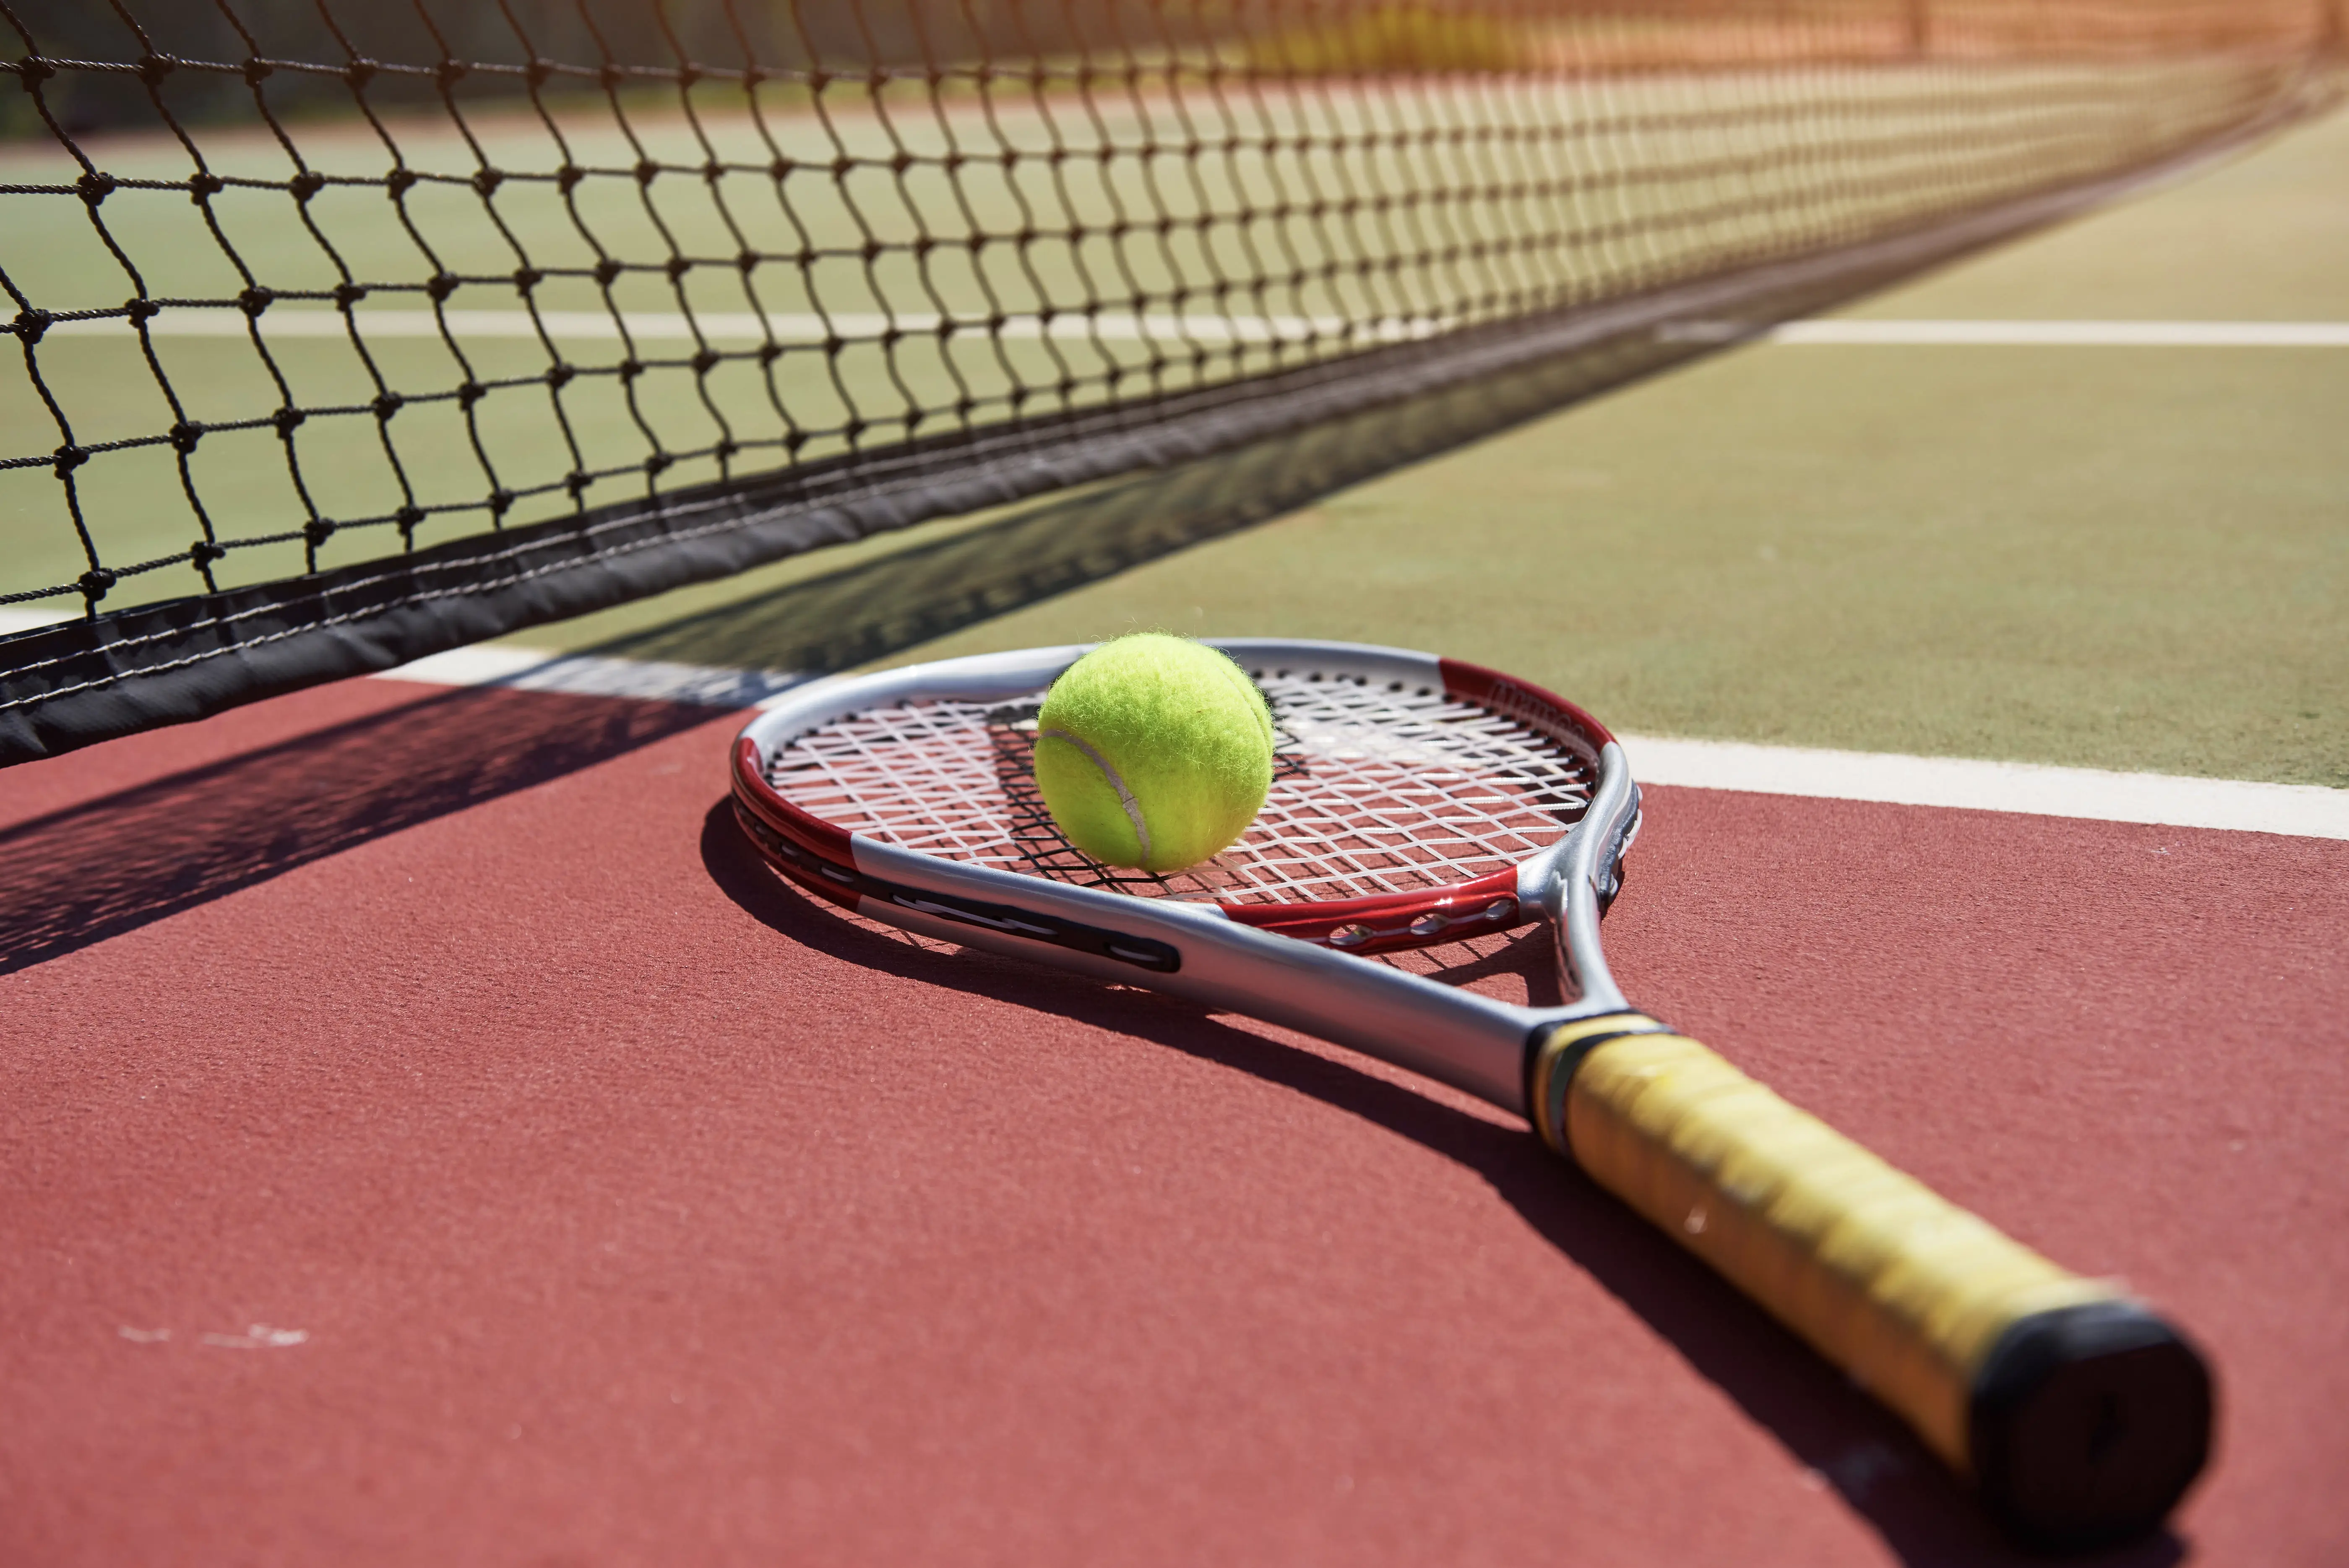 Uma raquete de tênis e bola de tênis nova em uma quadra de tênis recém pintada.